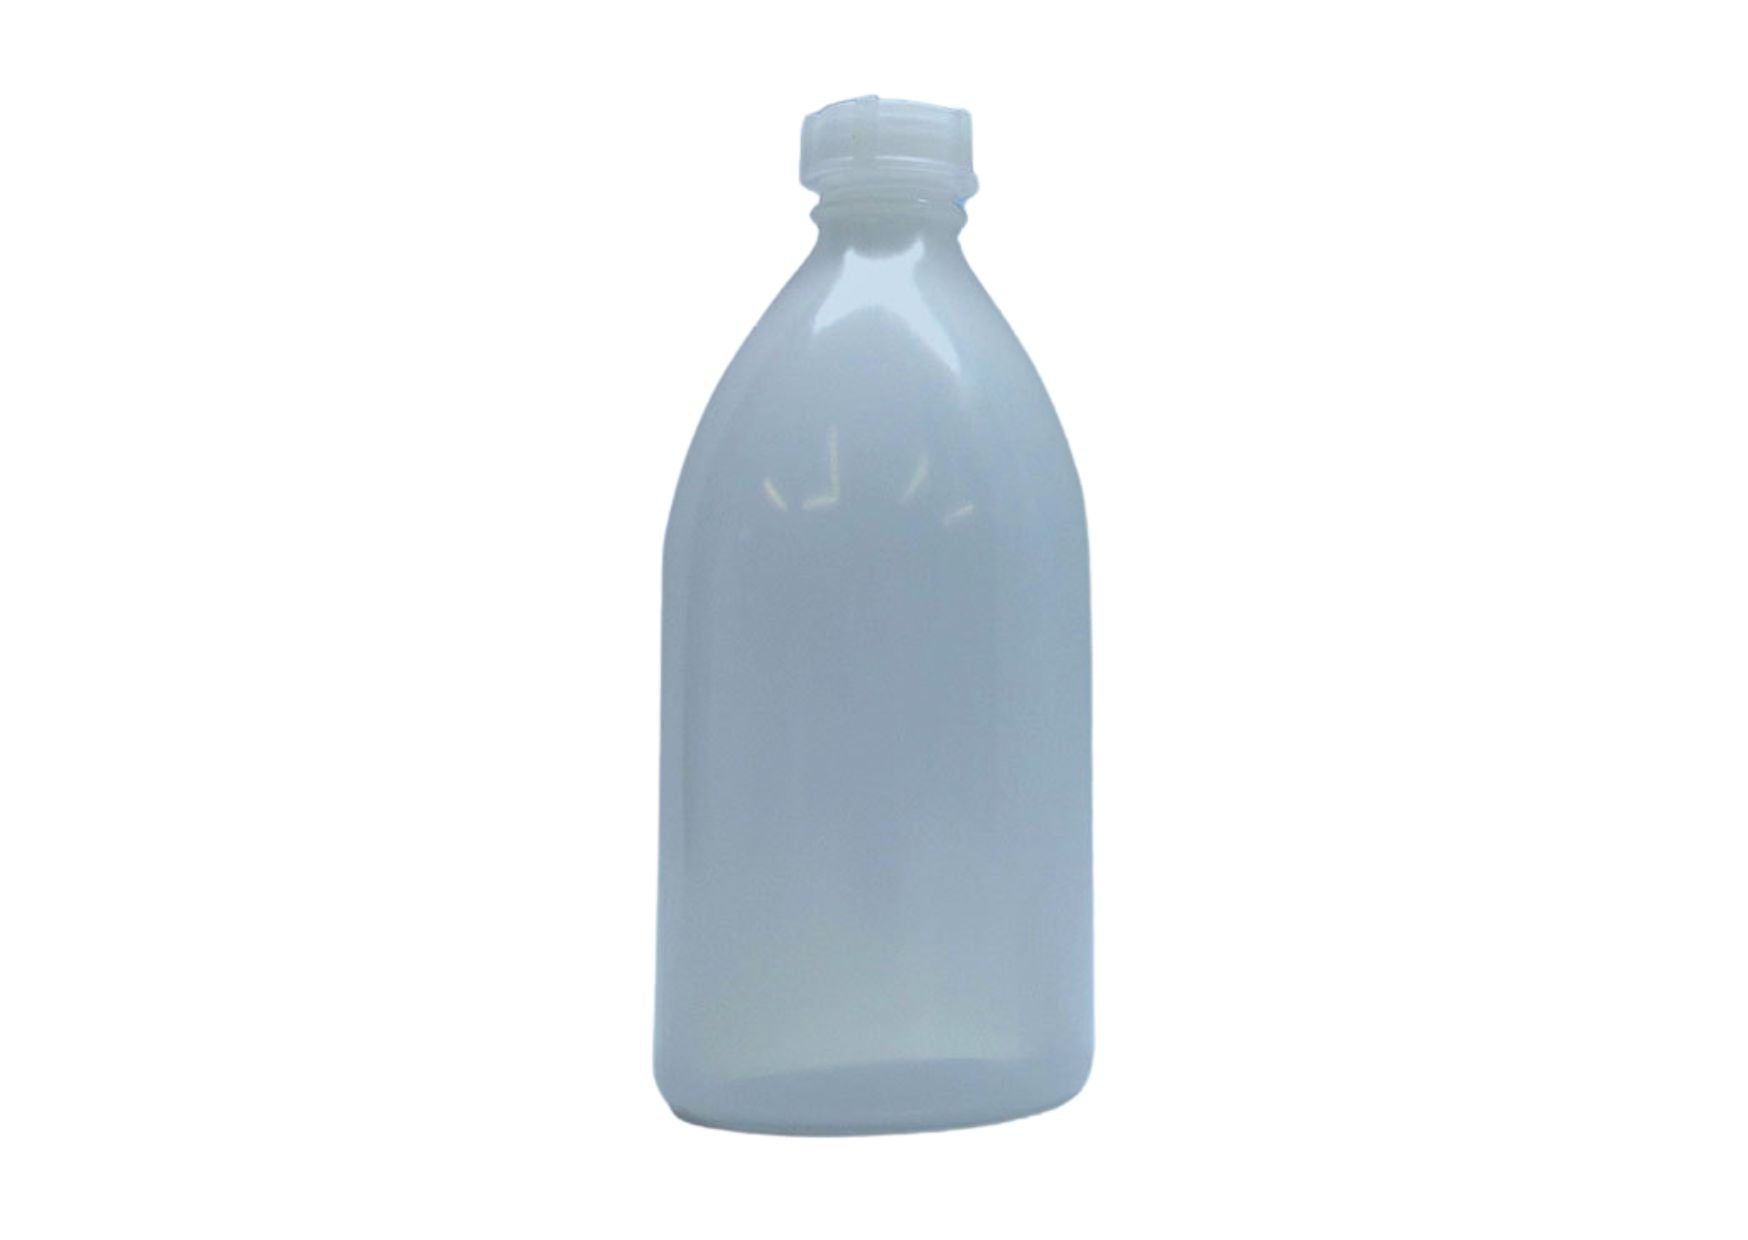 Empty spray bottle with spray attachment, 500 ml bottle - 0